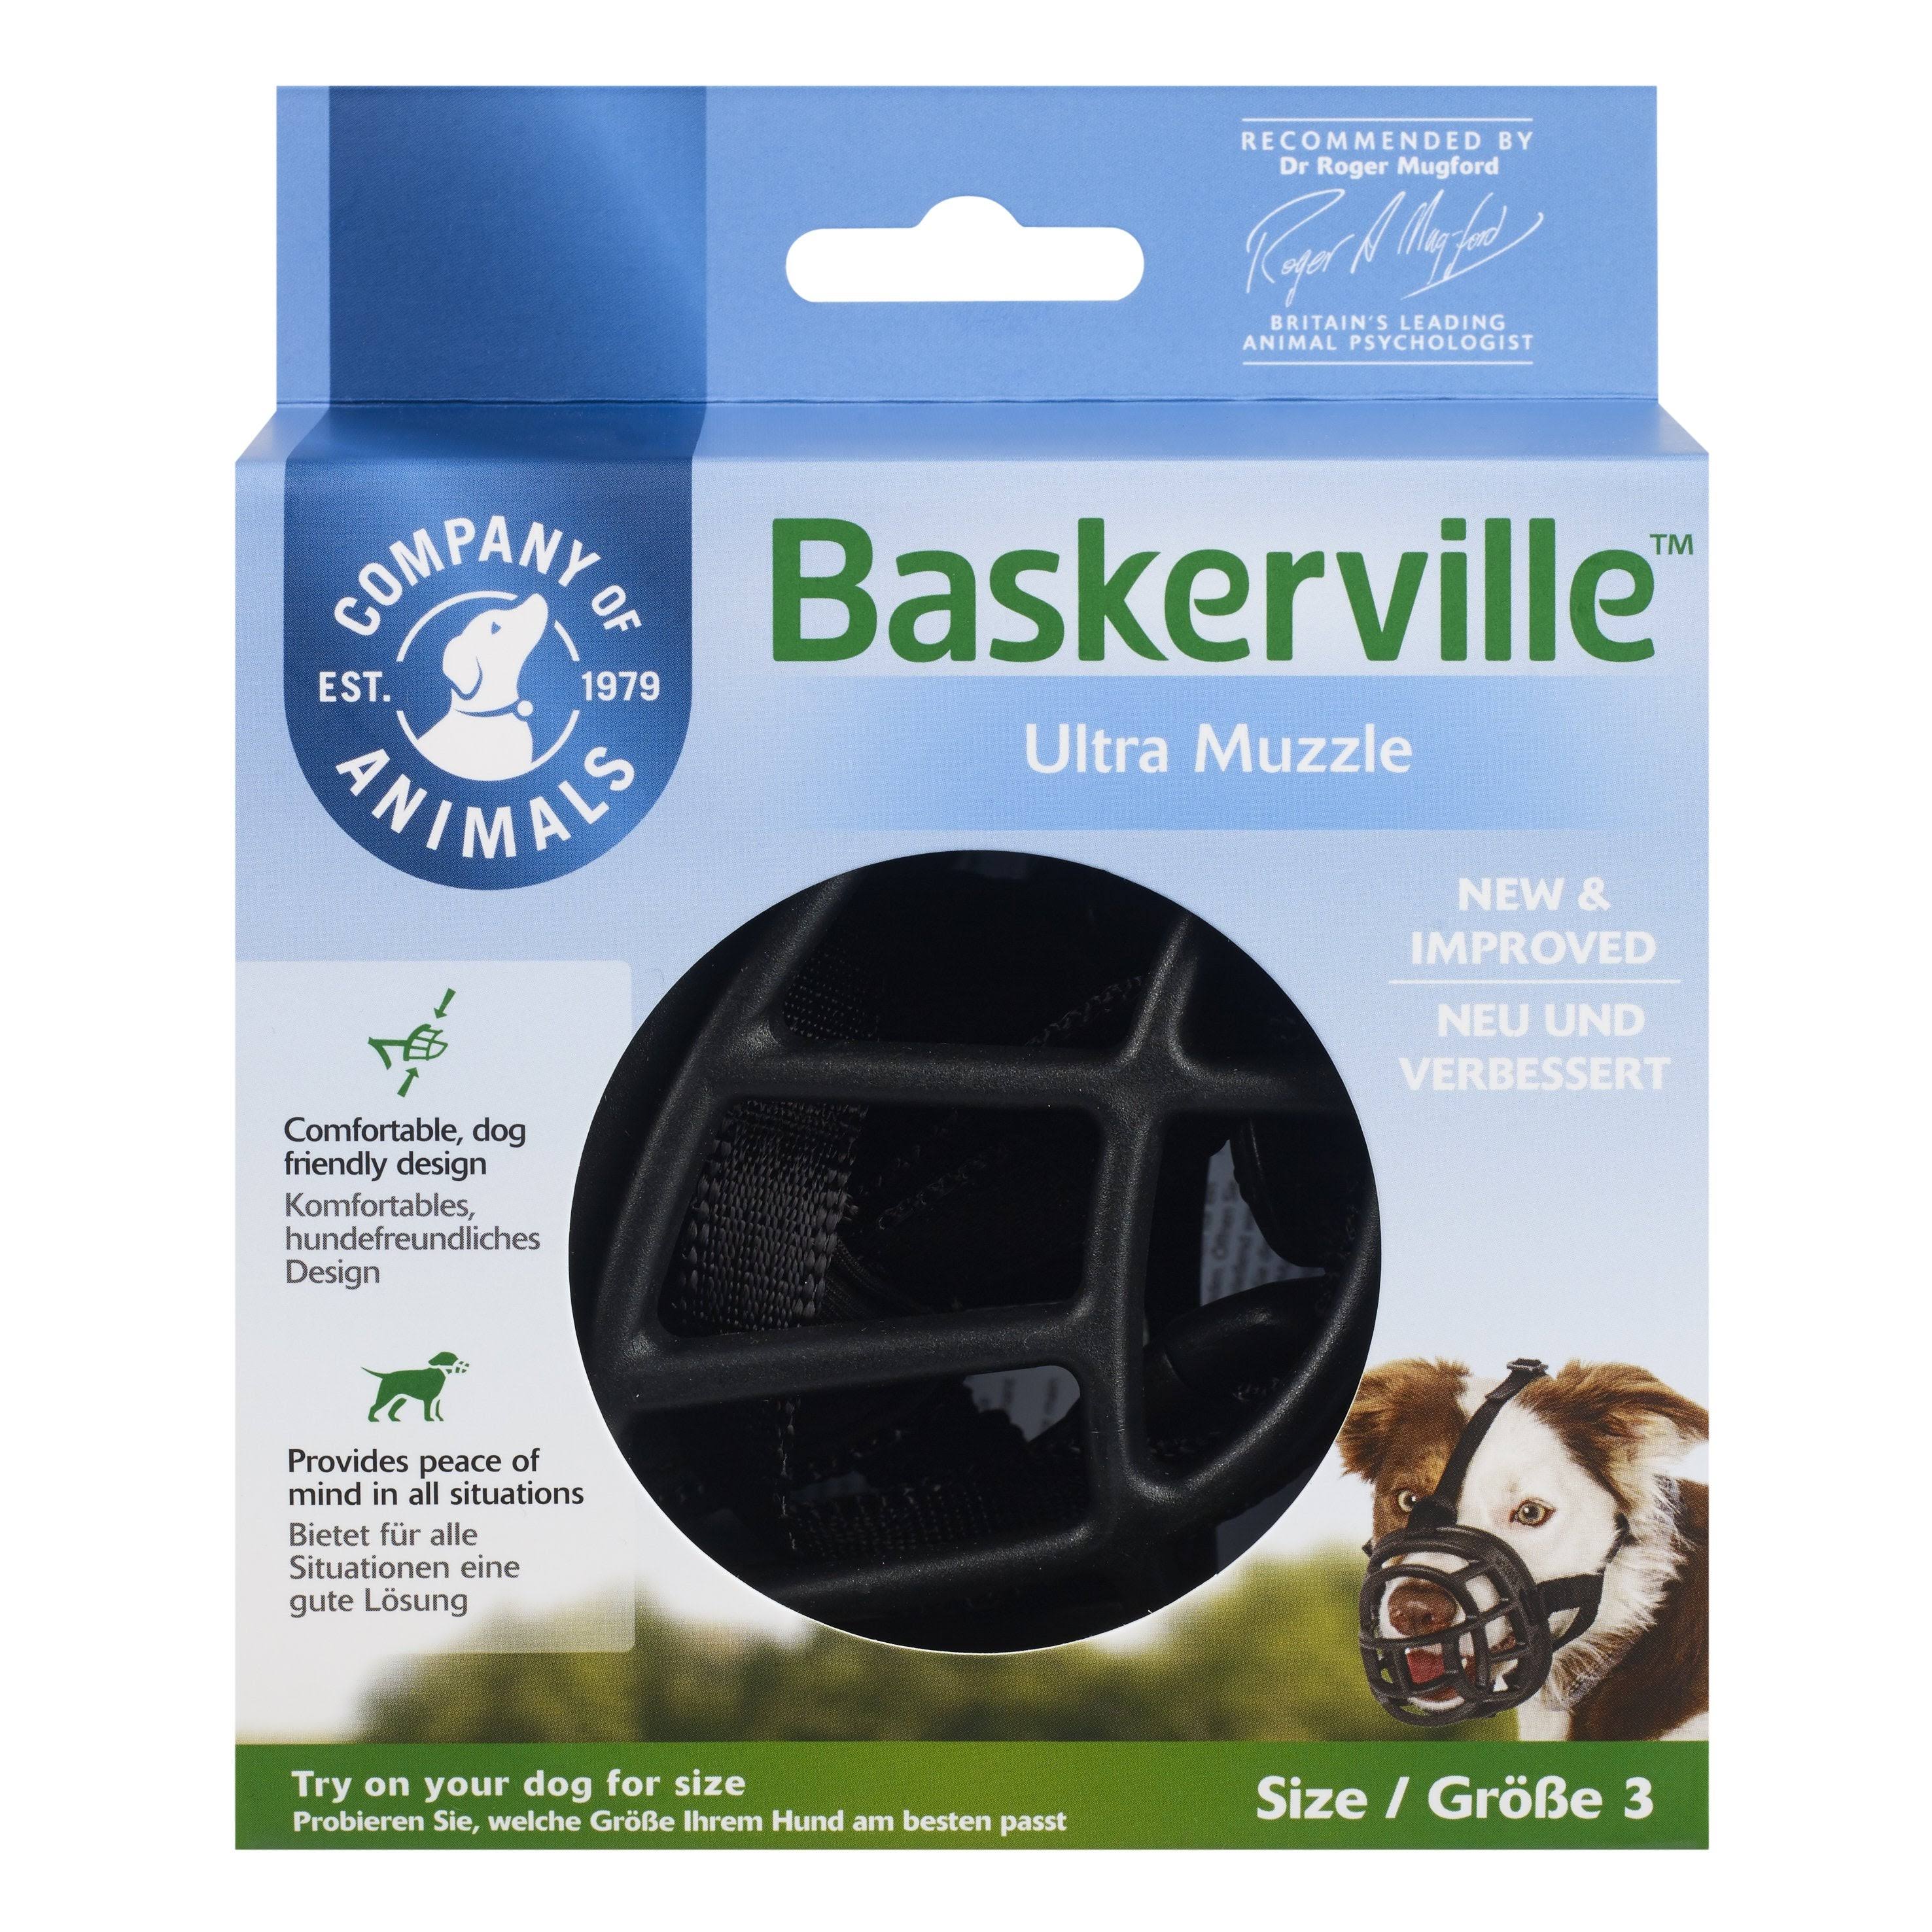 Baskerville Rubber Ultra Muzzle - Size 3